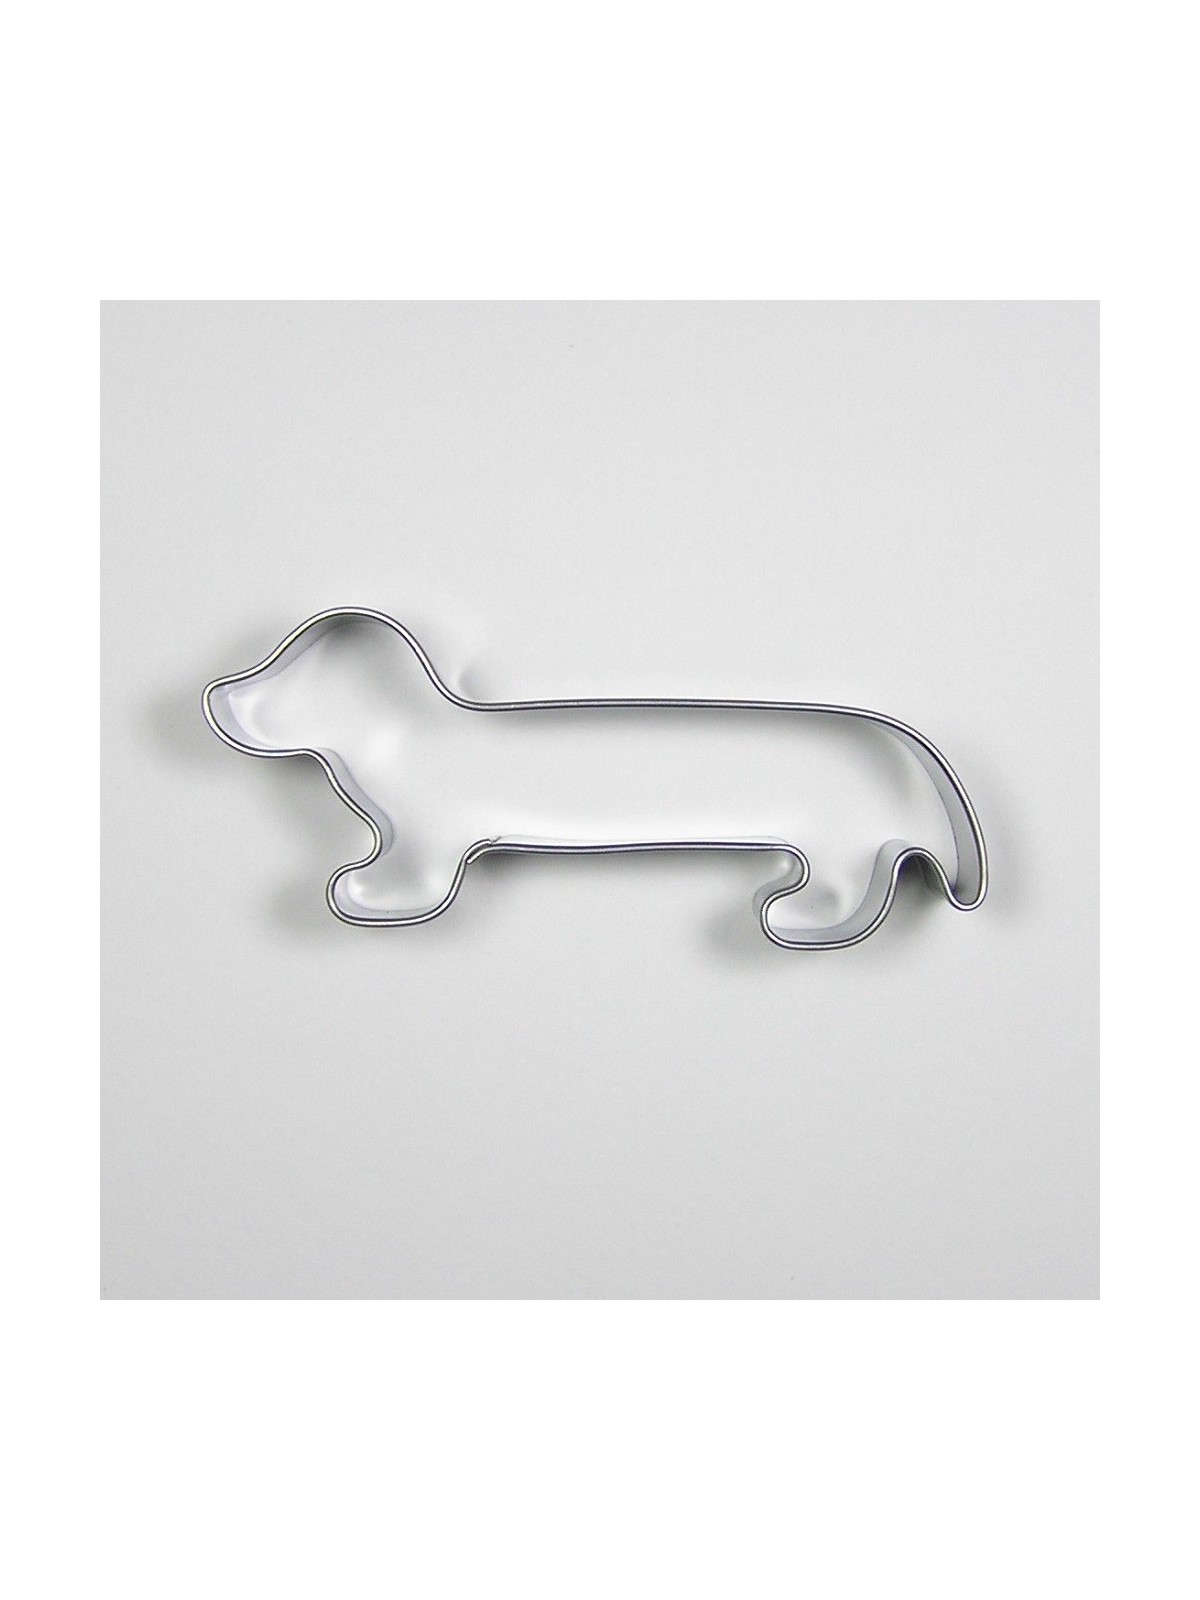 Stainless steel cutter - dachshund